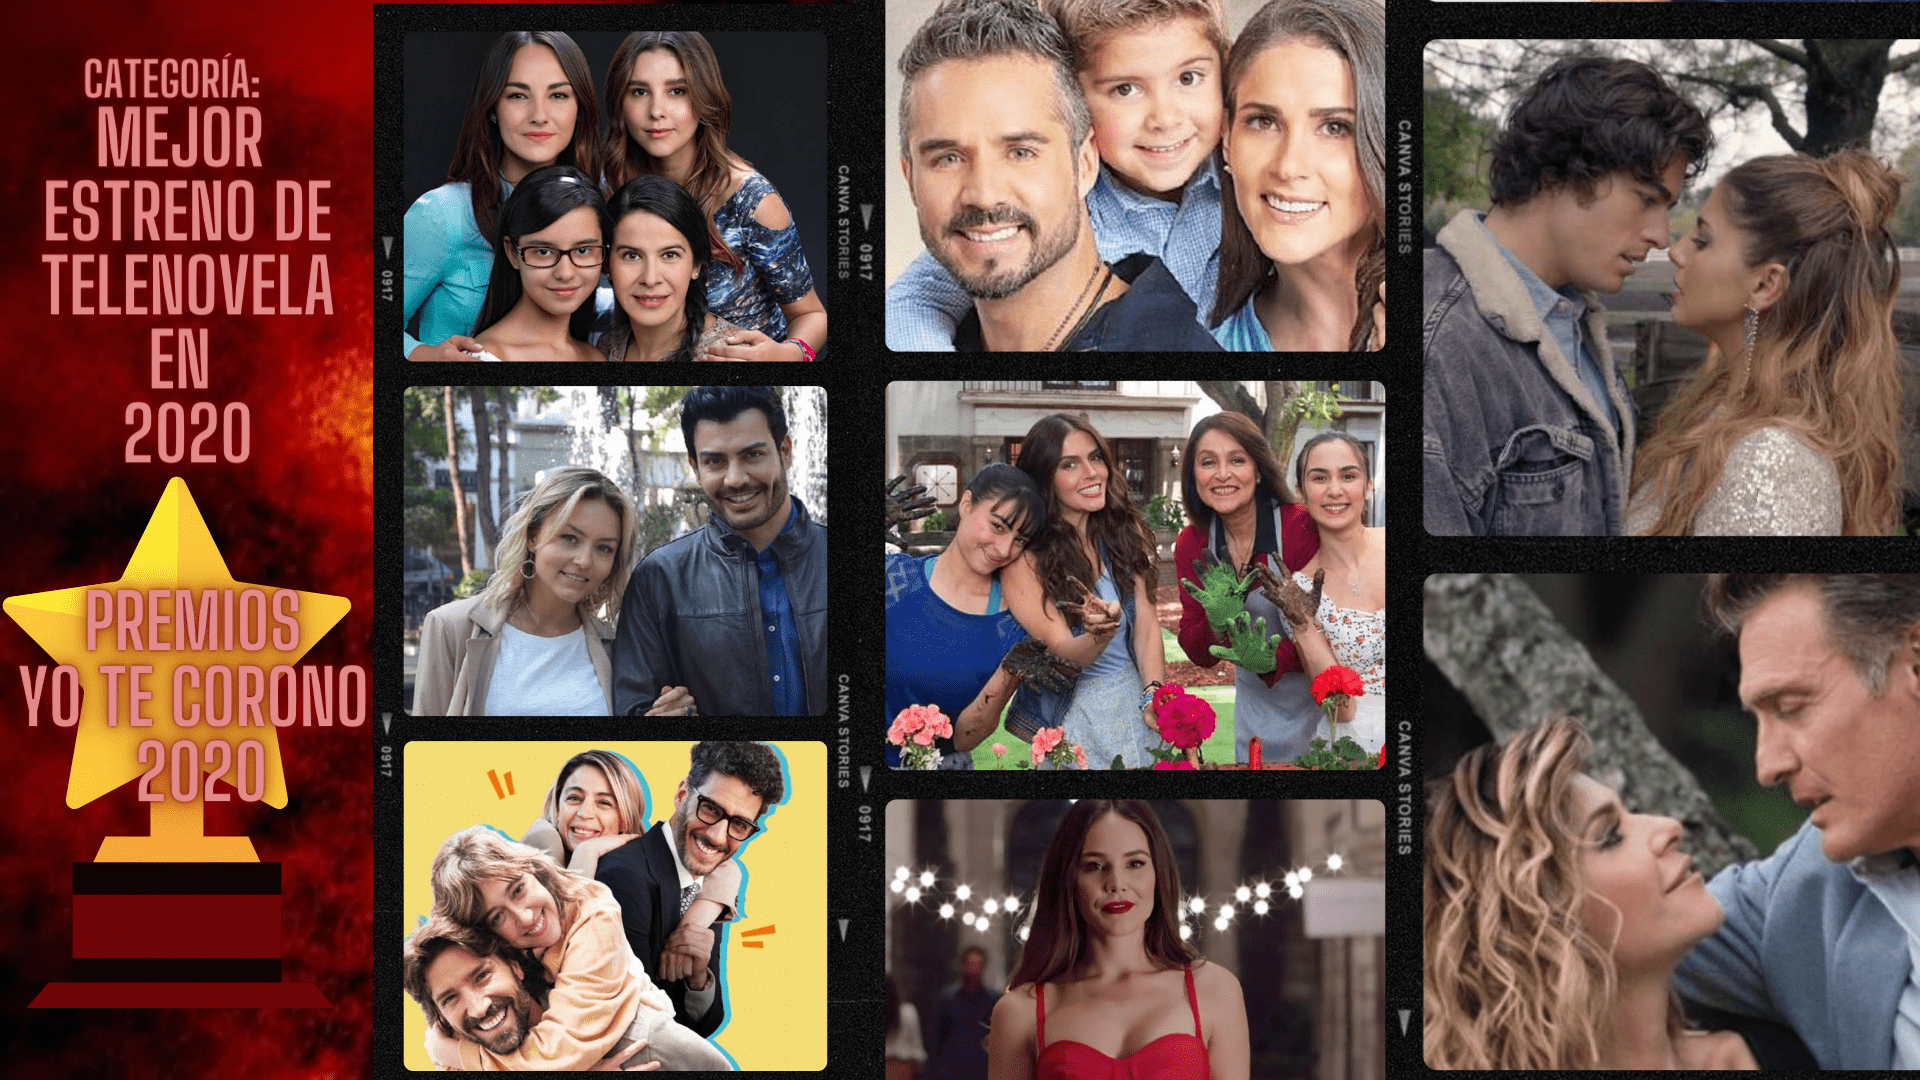 PREMIOS YO TE CORONO: Mejor estreno de telenovela en 2020